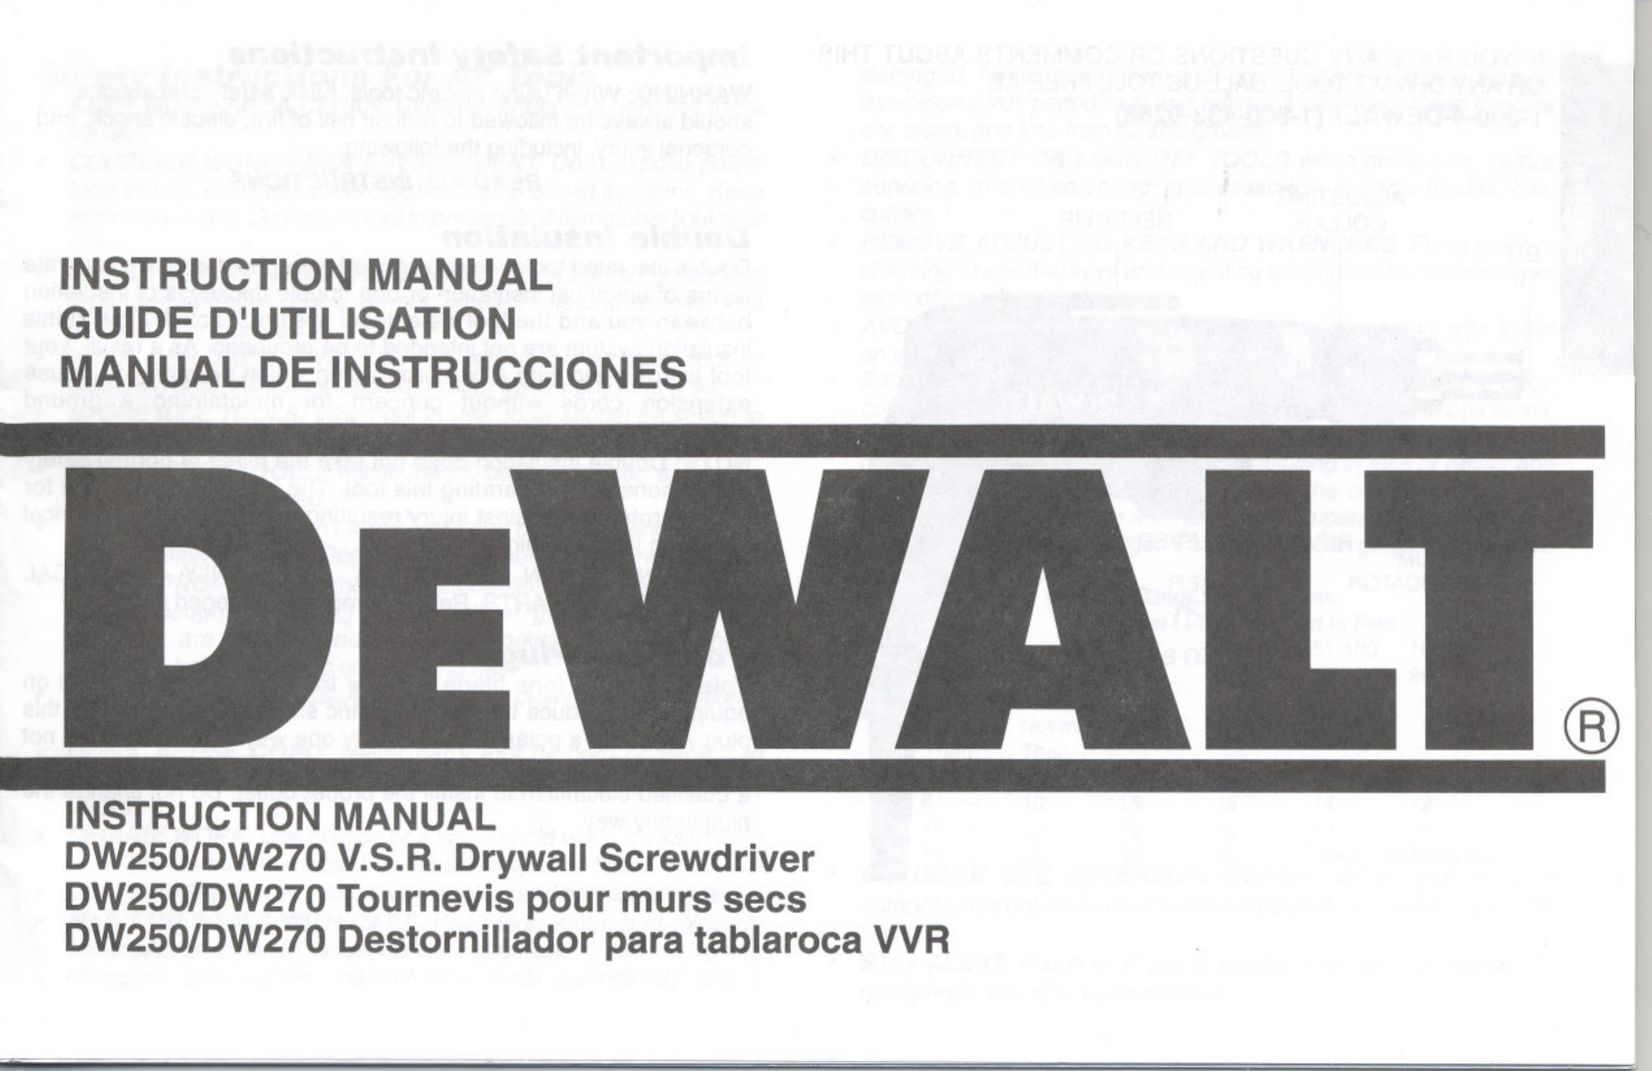 DeWalt DW250/DW270 Power Screwdriver User Manual